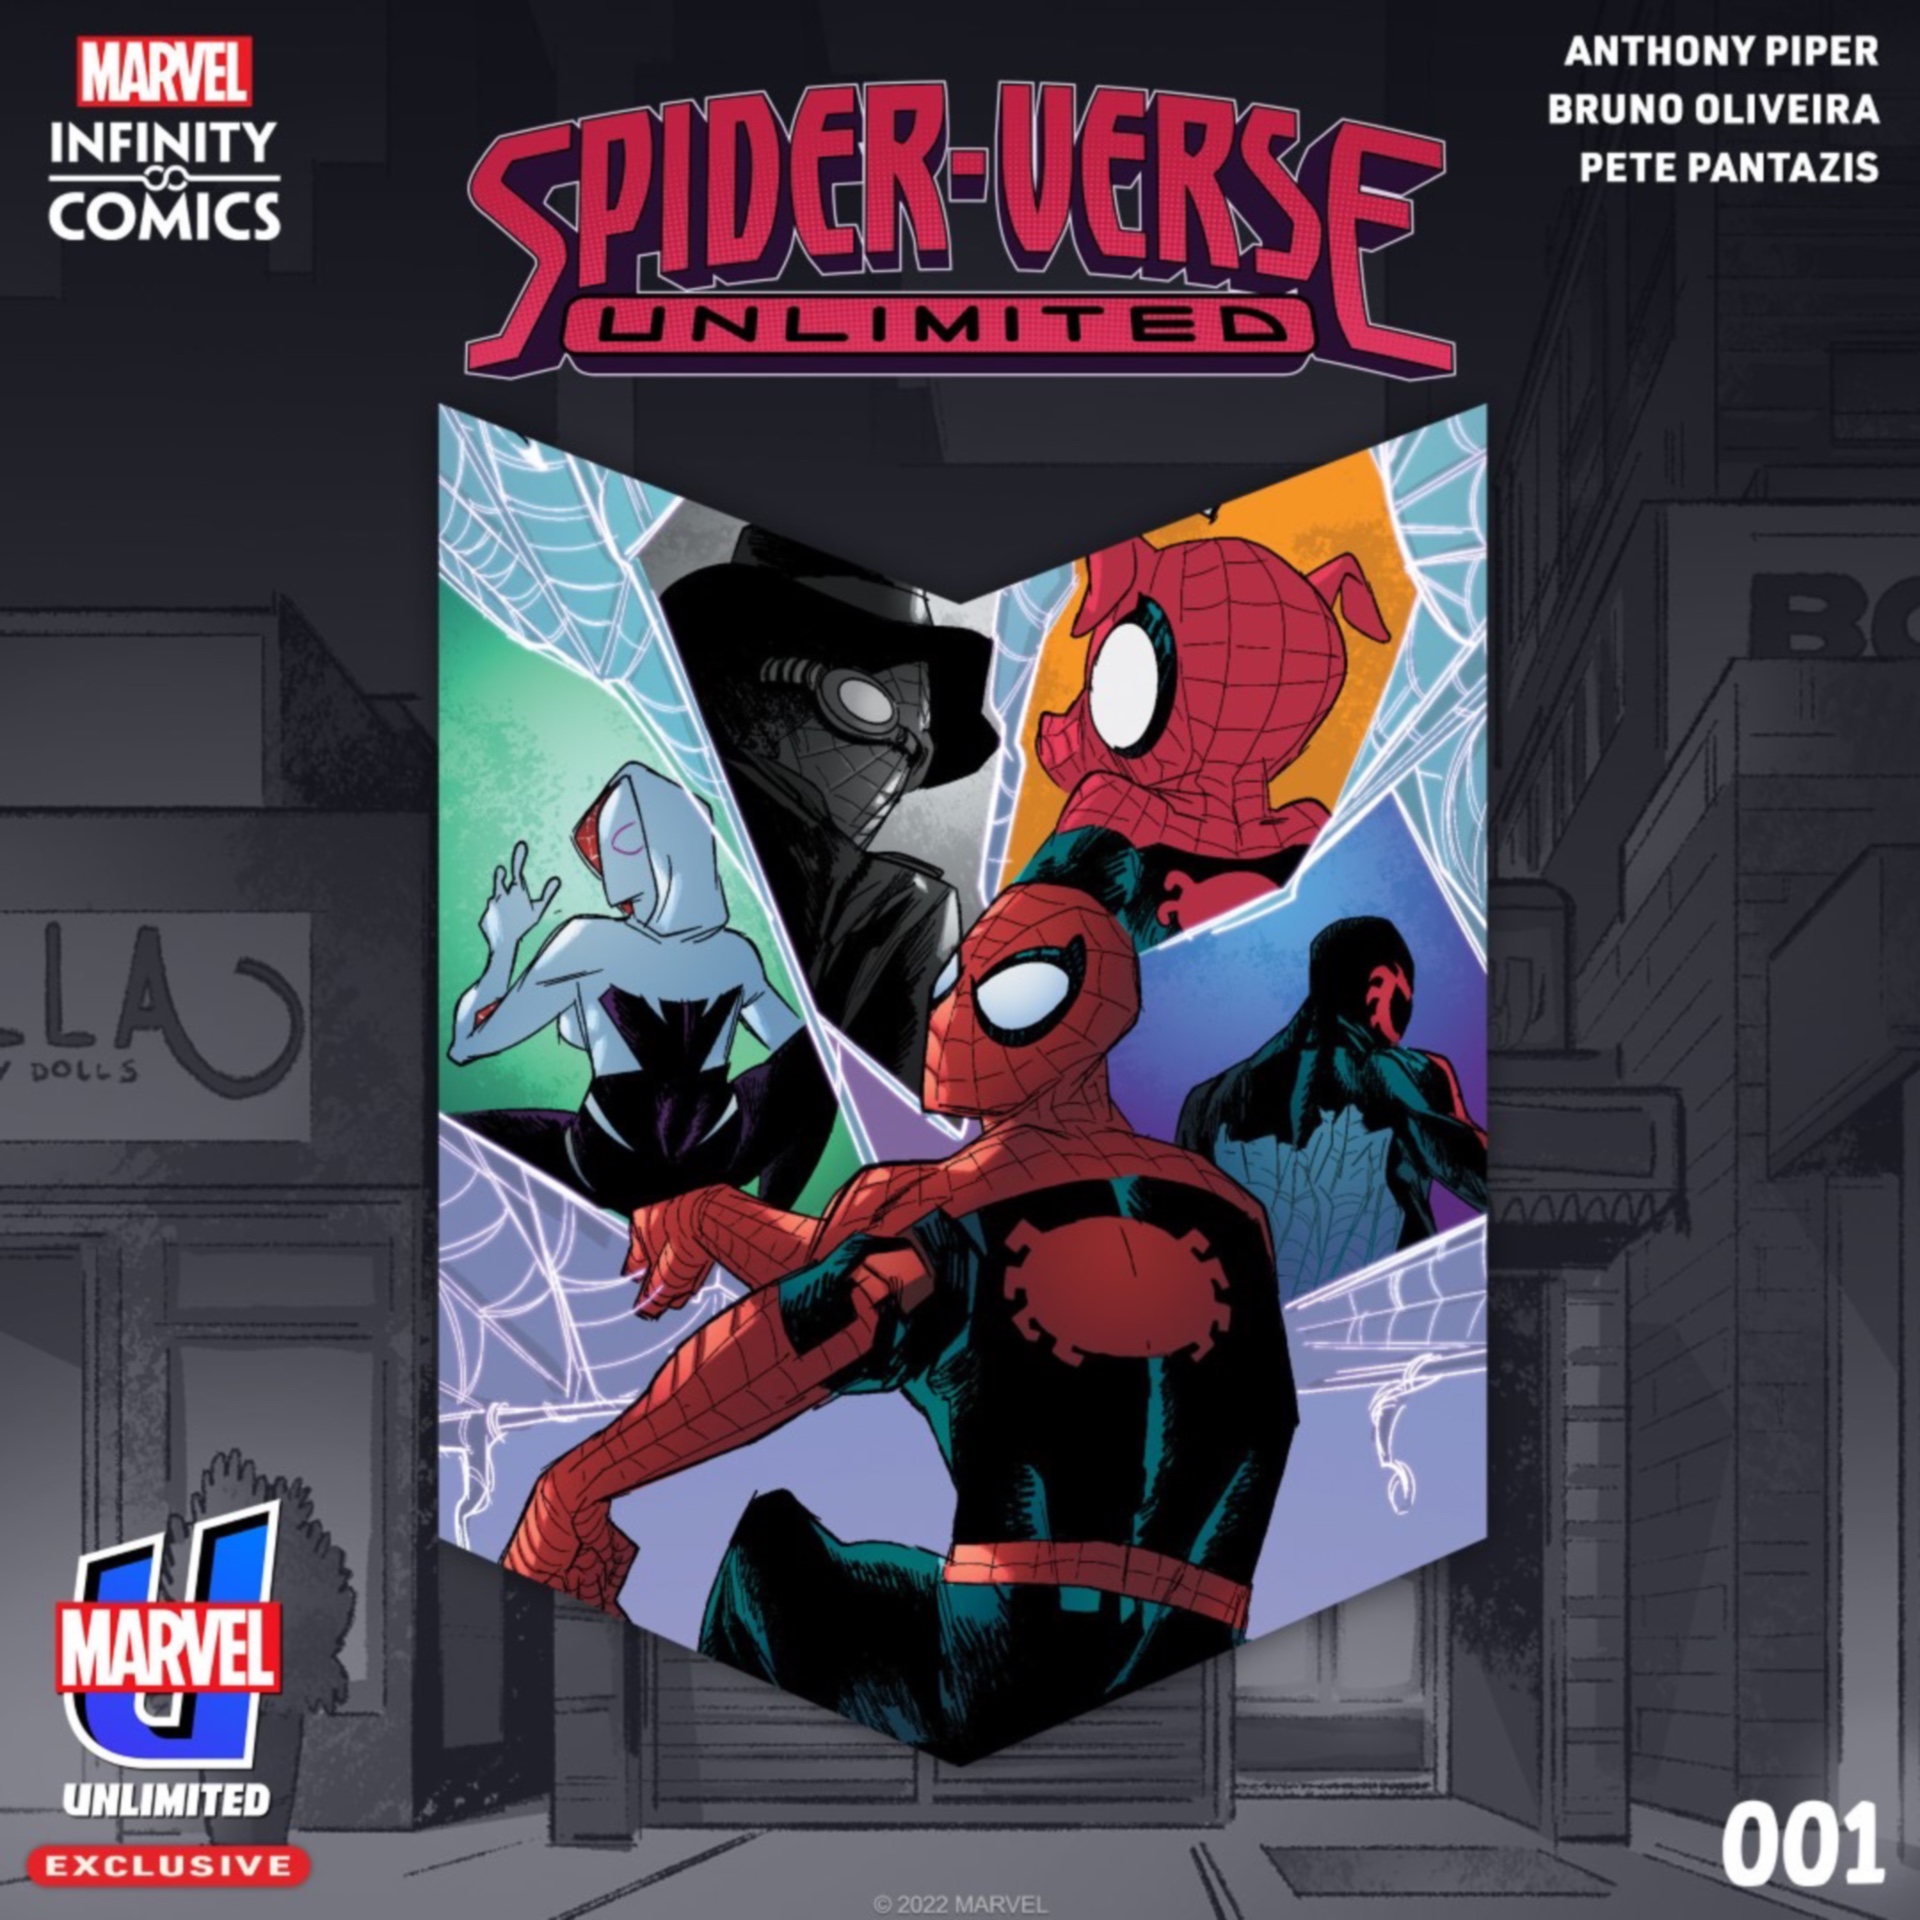 Arte promocional de Spider-Verse Unlimited